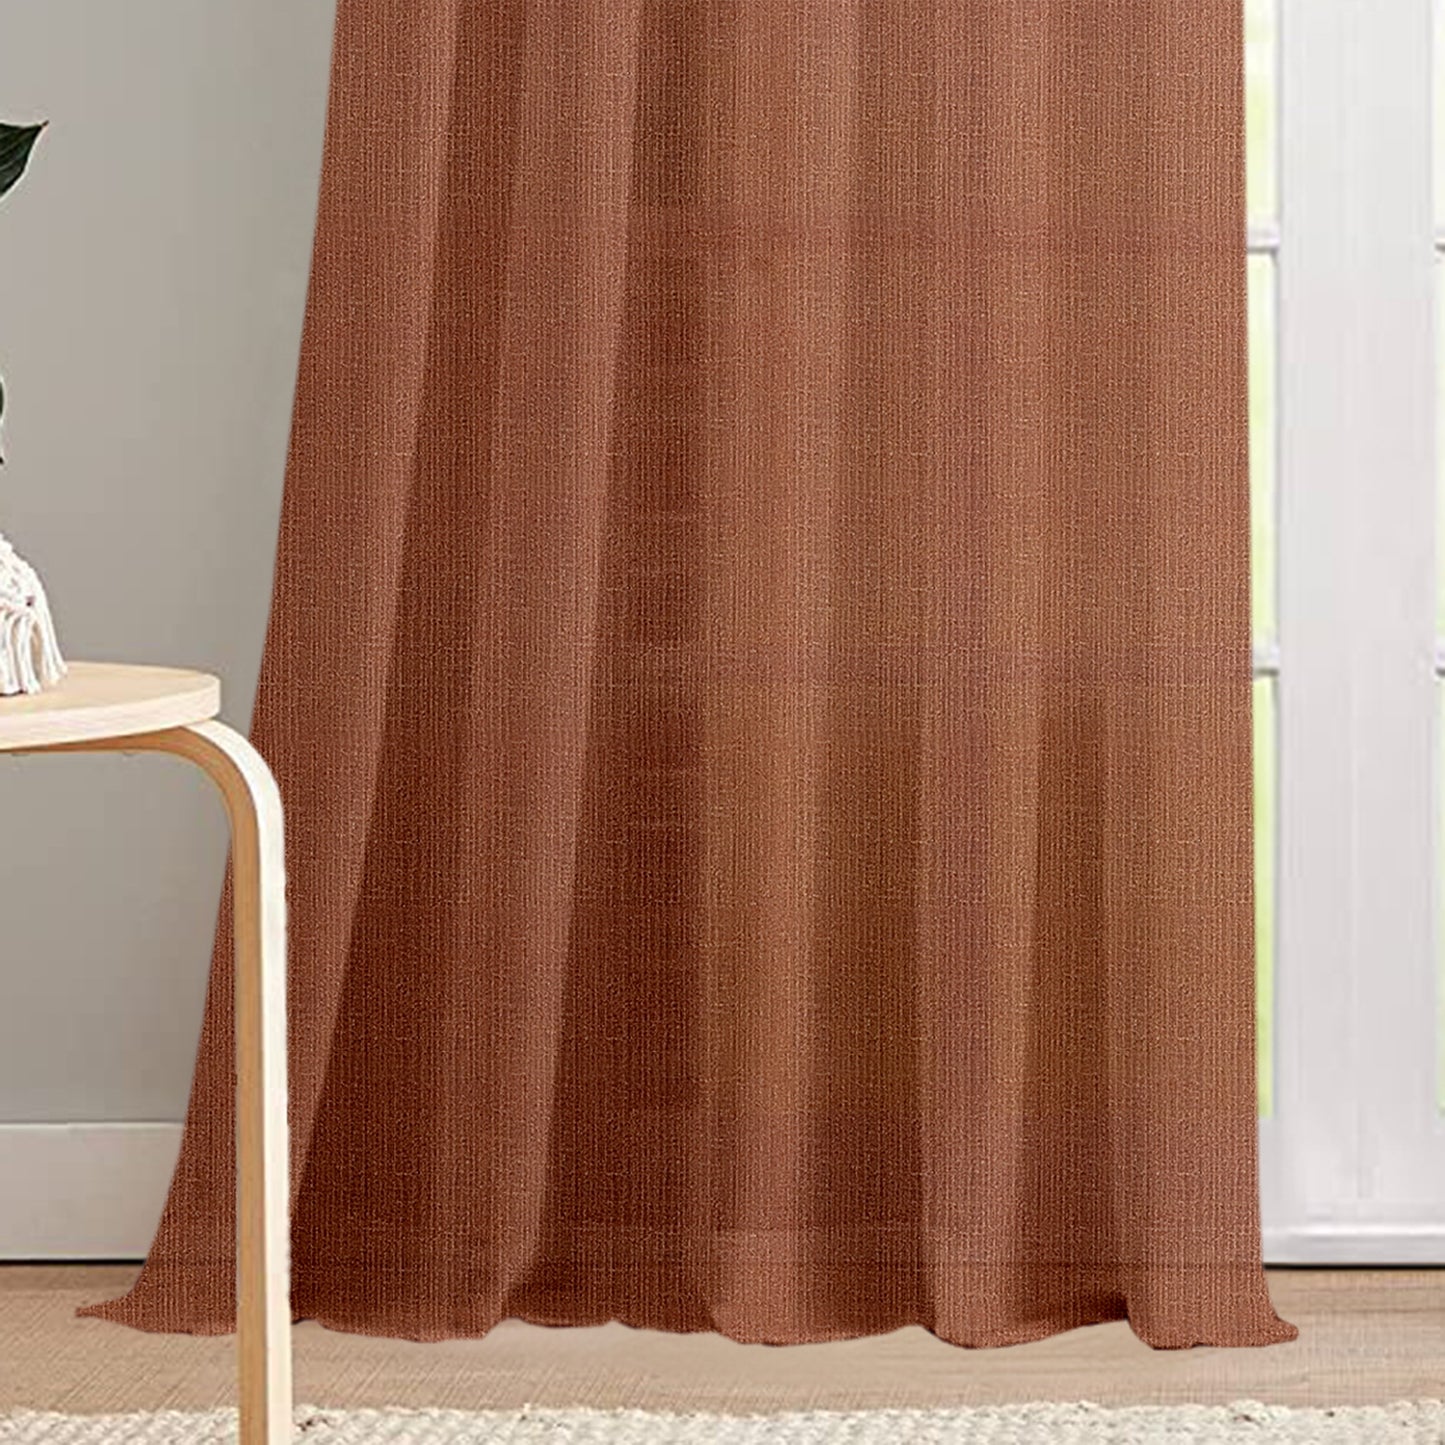 sheer-curtain-brown